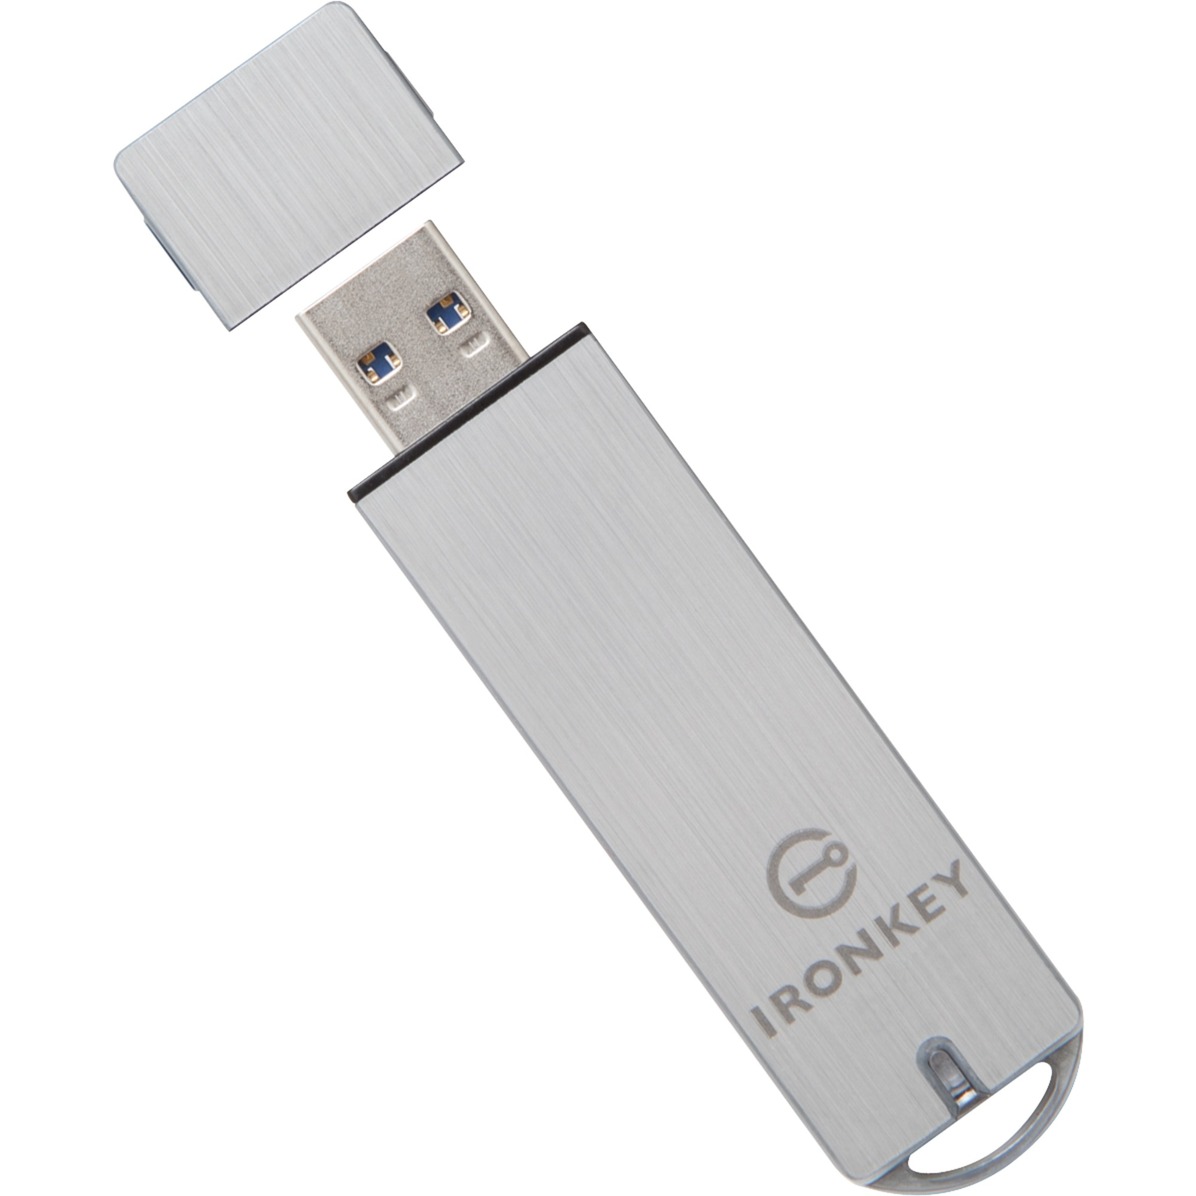 IronKey S1000 Basic 4 GB, USB-Stick von Kingston